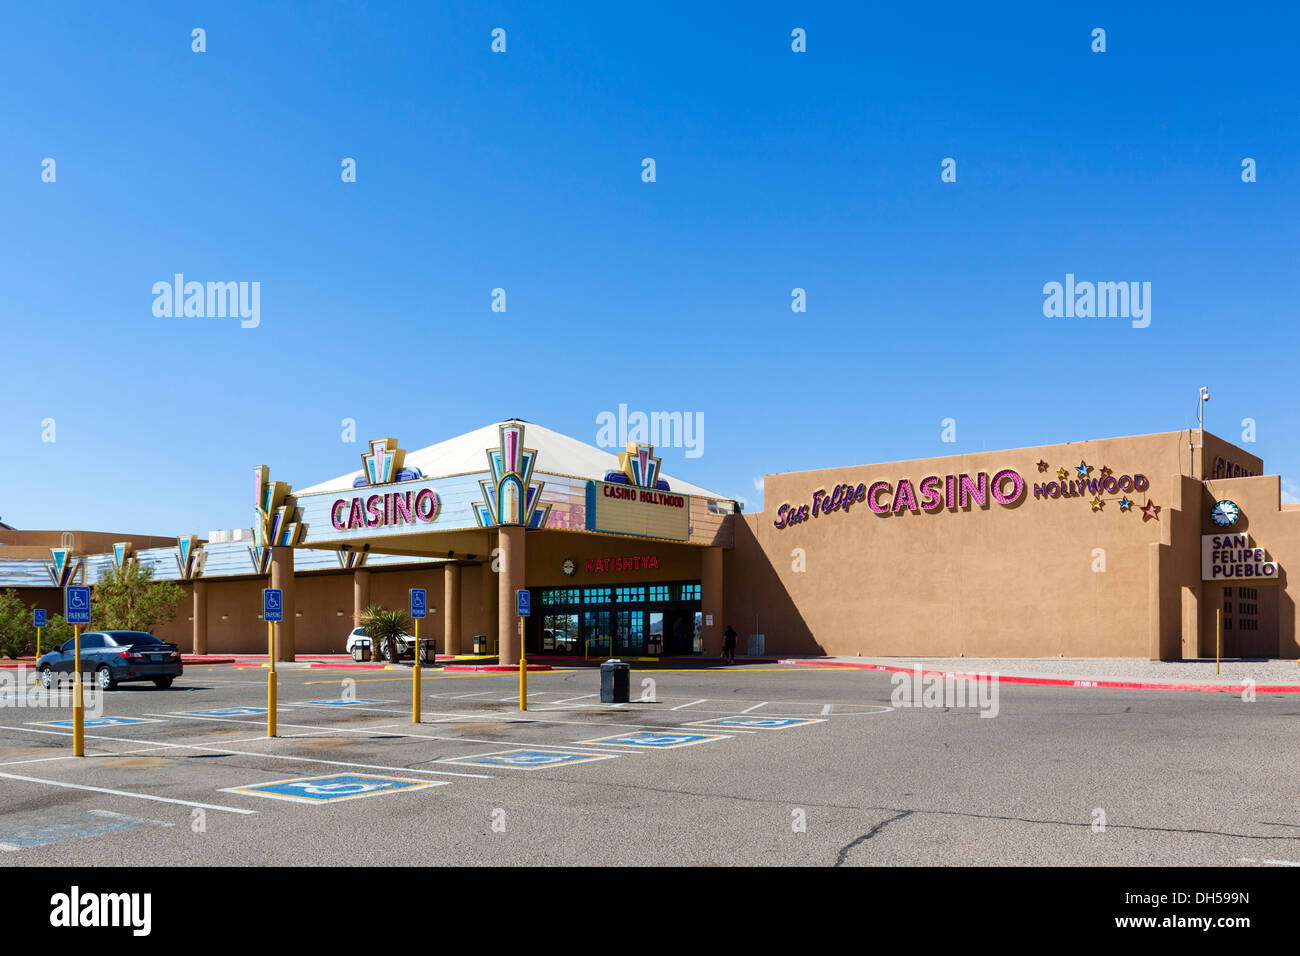 Native American Casino in San Felipe Pueblo, north of Albuquerque, New Mexico, USA Stock Photo